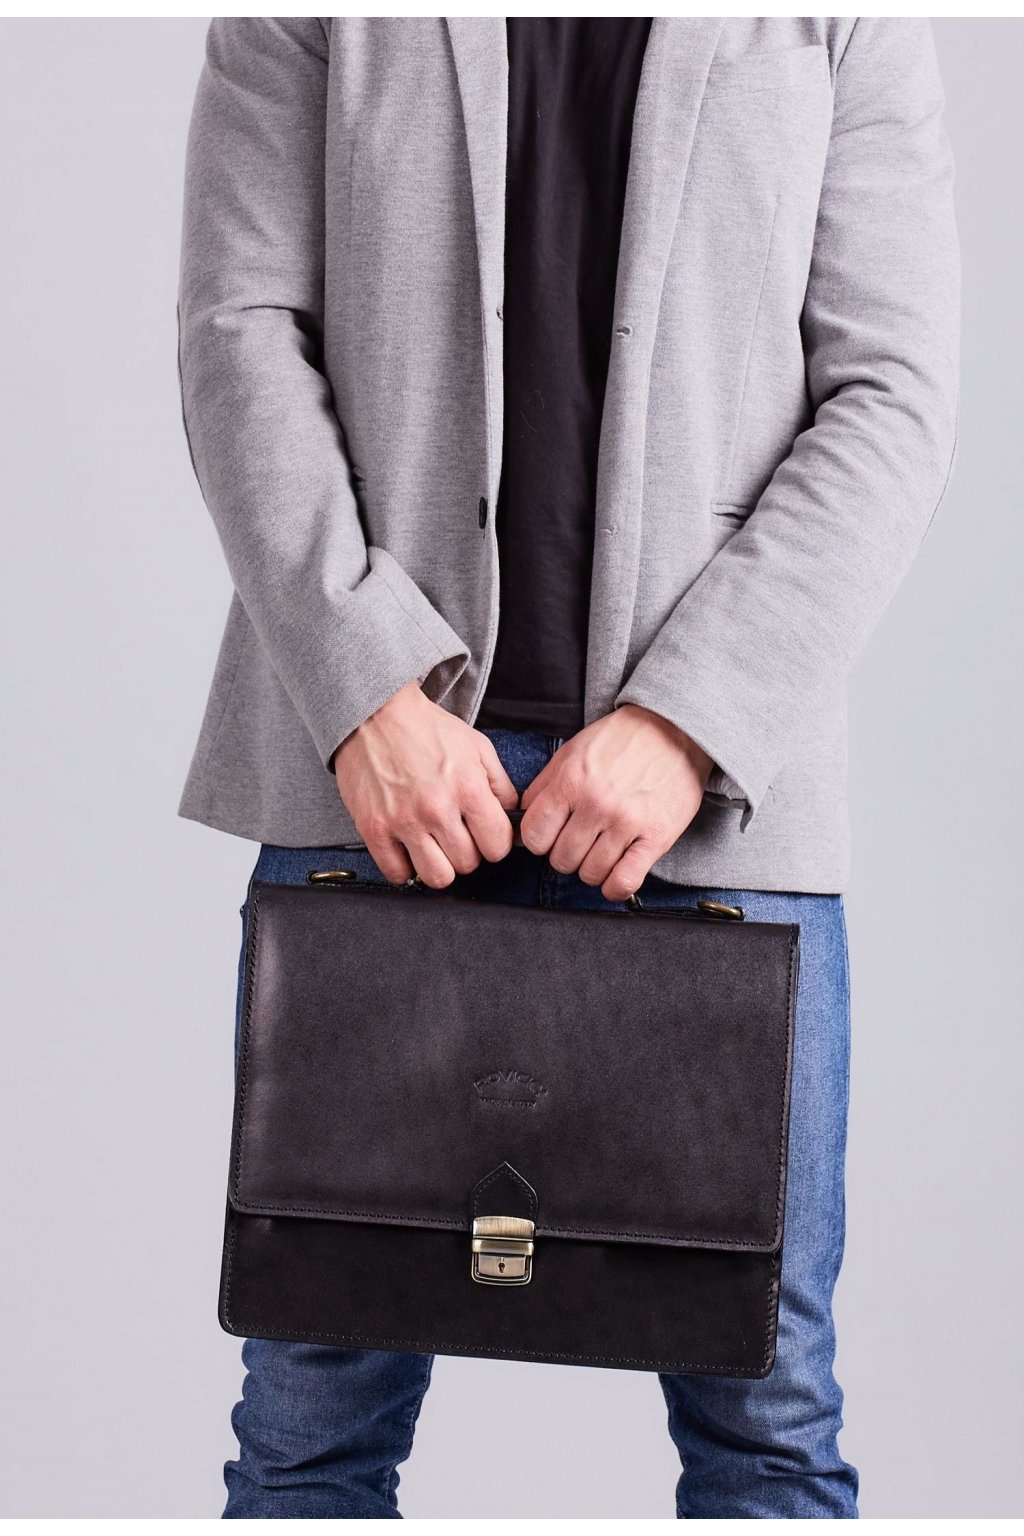 Černá pánská taška přes rameno | FASHIONSUGAR e-shop